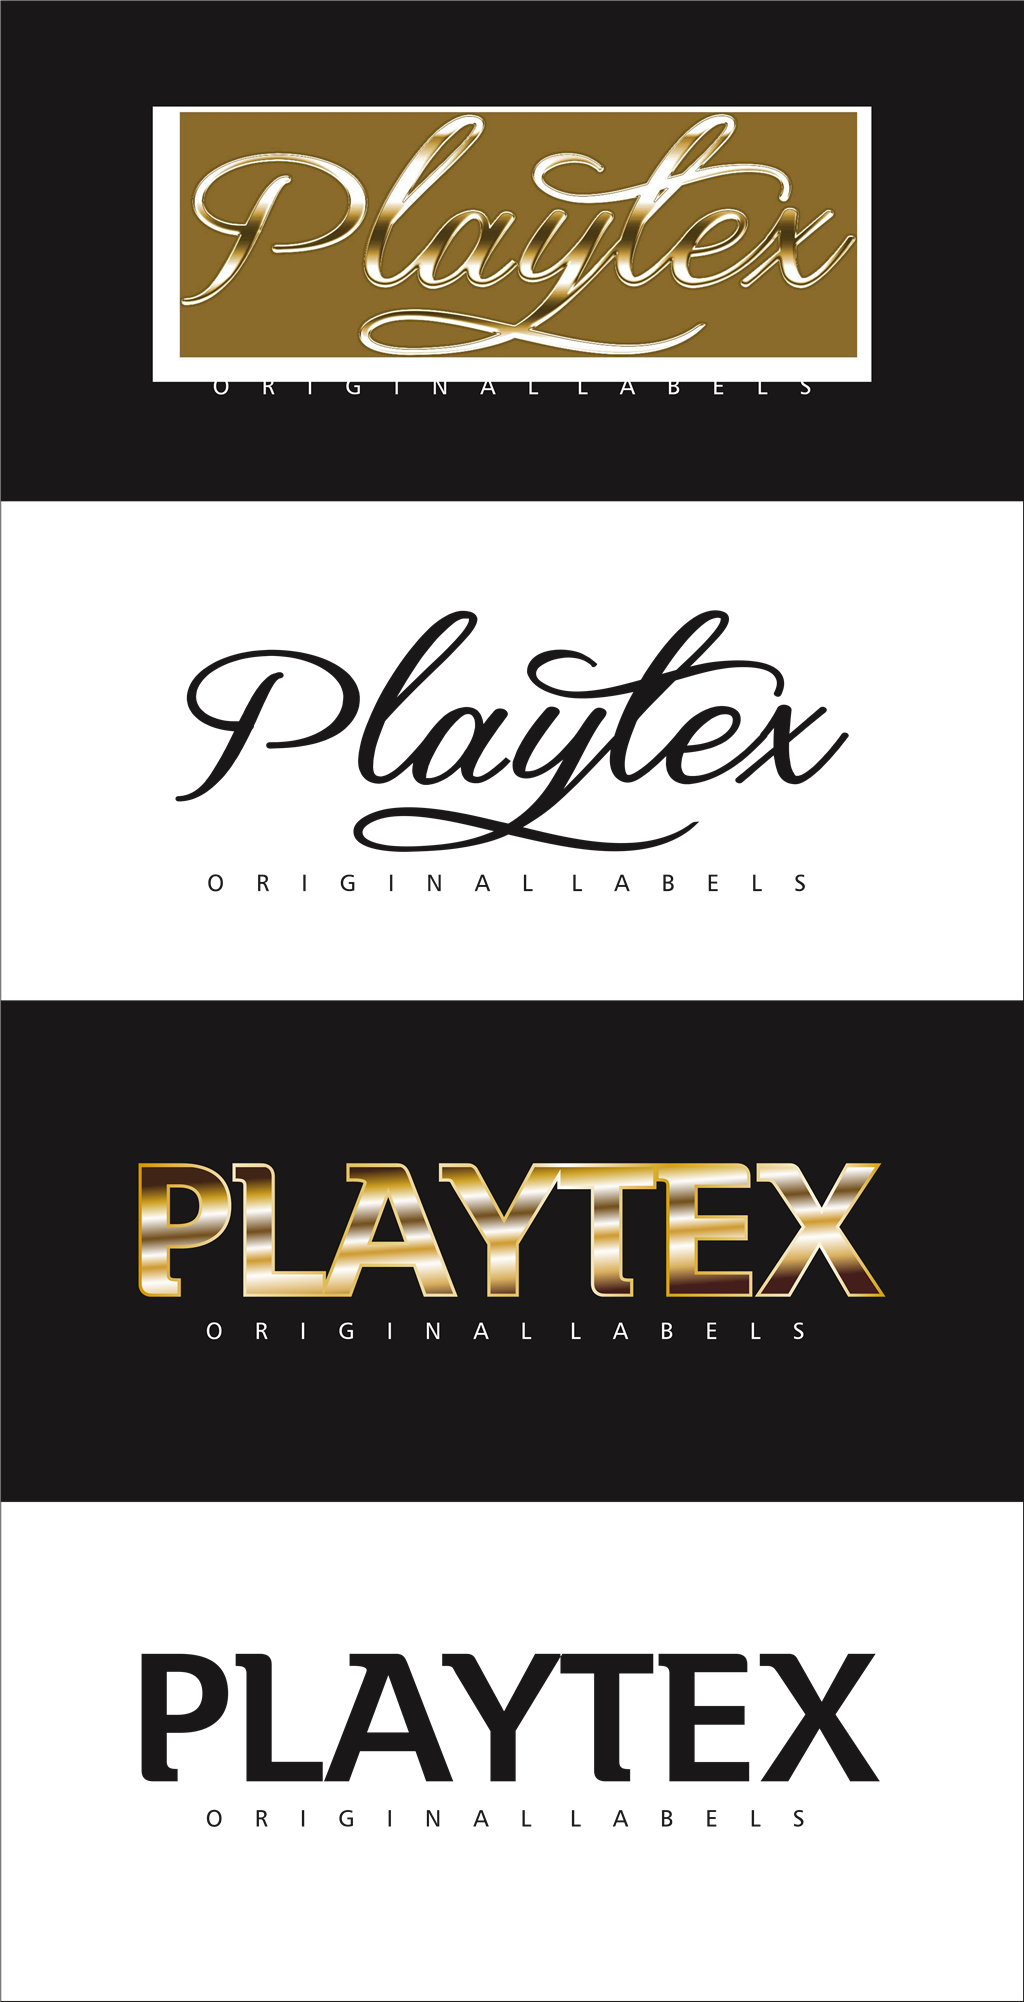 Playtex logotype, transparent .png, medium, large